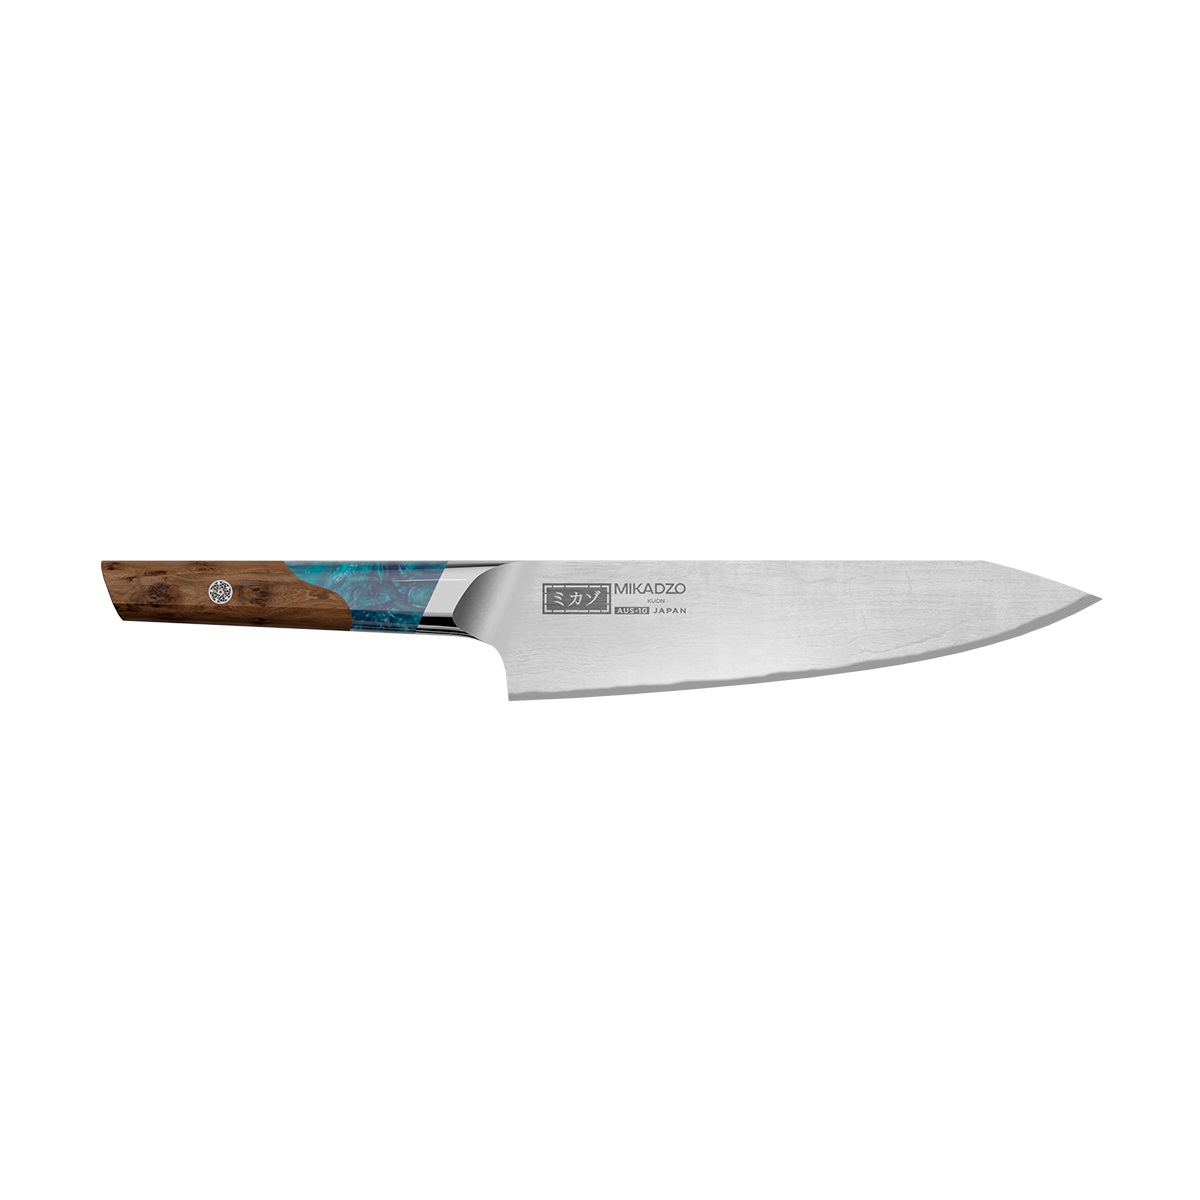 Кухонный нож Omoikiri Damascus Kuon 4992035 кухонный нож omoikiri micadzo yamata yk 01 59 pa 89